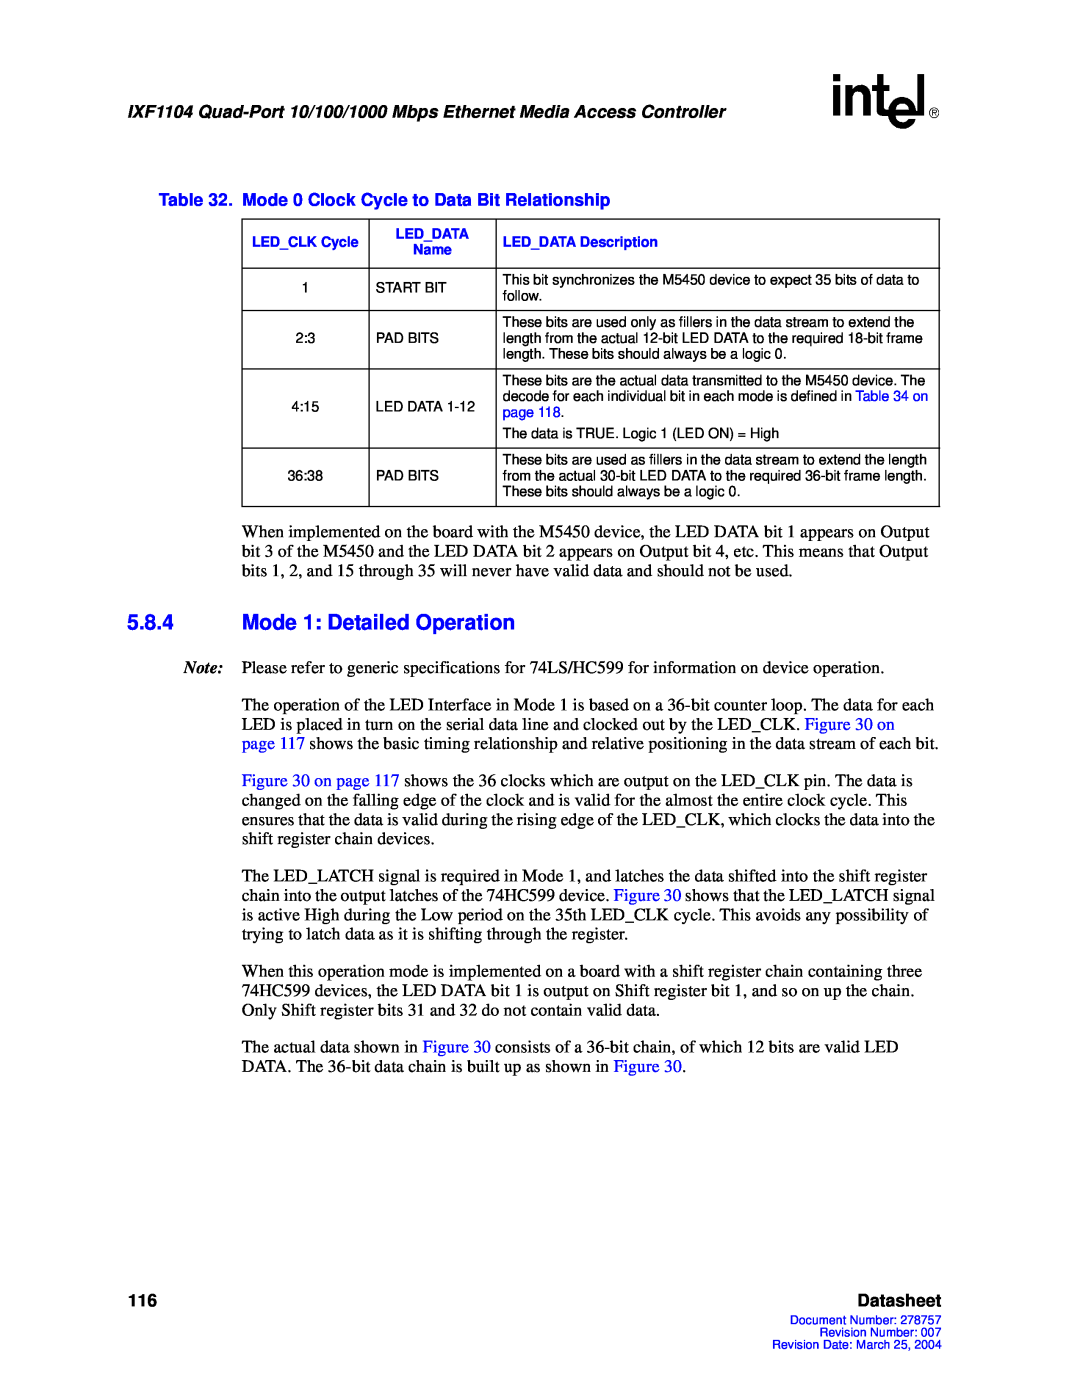 Intel IXF1104 manual 5.8.4Mode 1: Detailed Operation, Datasheet 